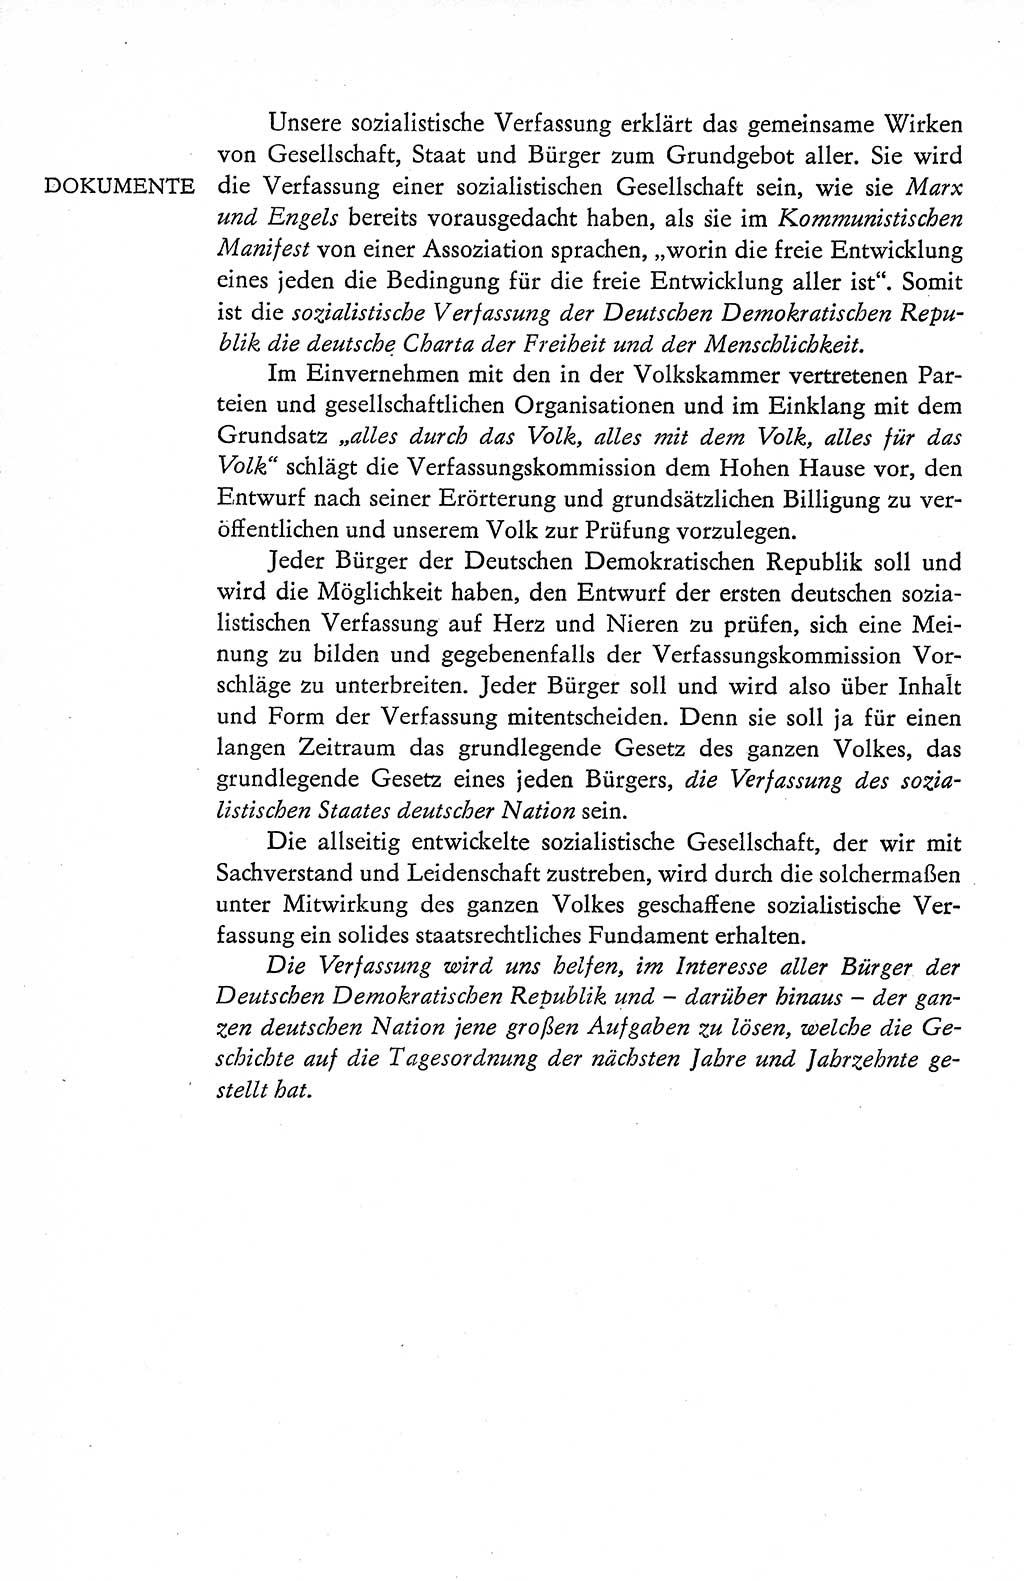 Verfassung der Deutschen Demokratischen Republik (DDR), Dokumente, Kommentar 1969, Band 1, Seite 106 (Verf. DDR Dok. Komm. 1969, Bd. 1, S. 106)